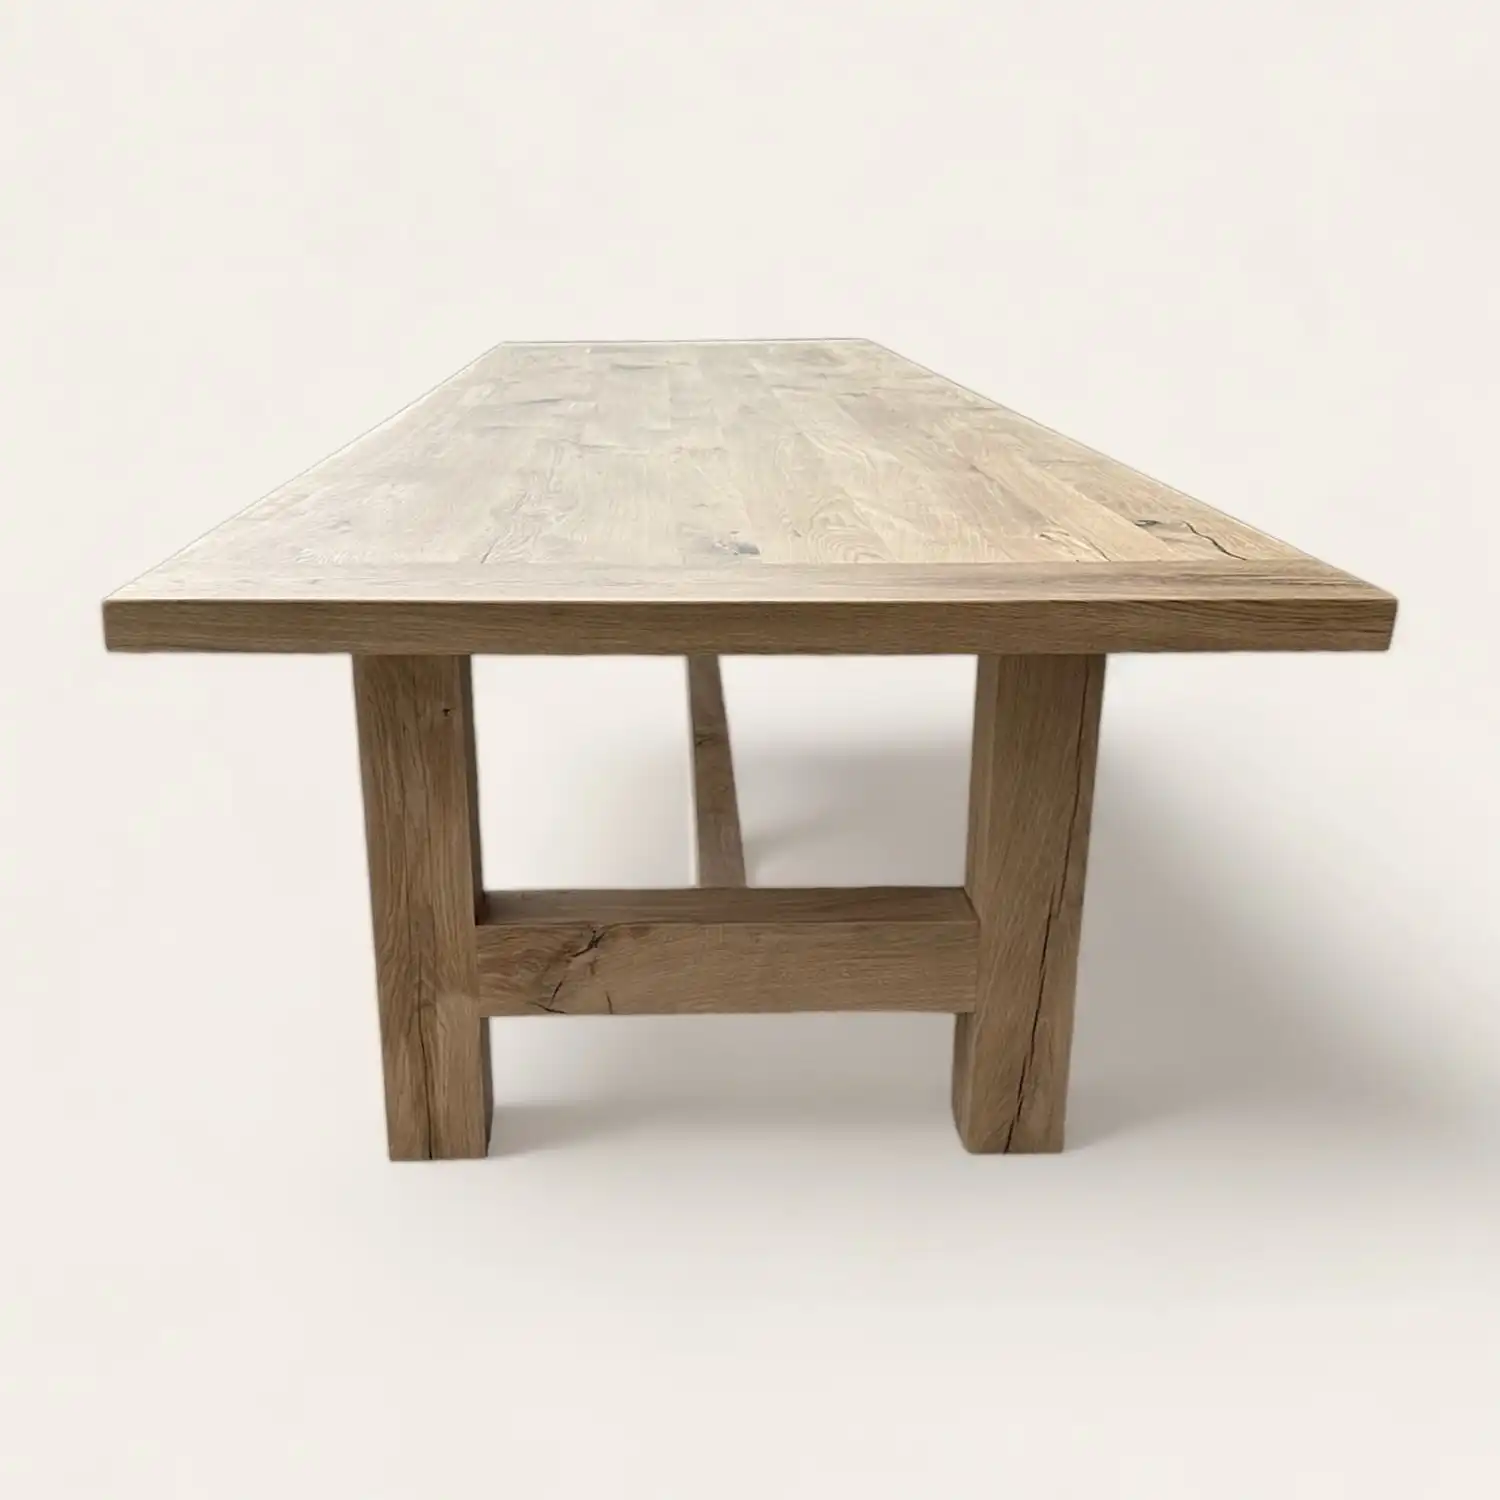  Une table rustique en bois sur fond blanc. 